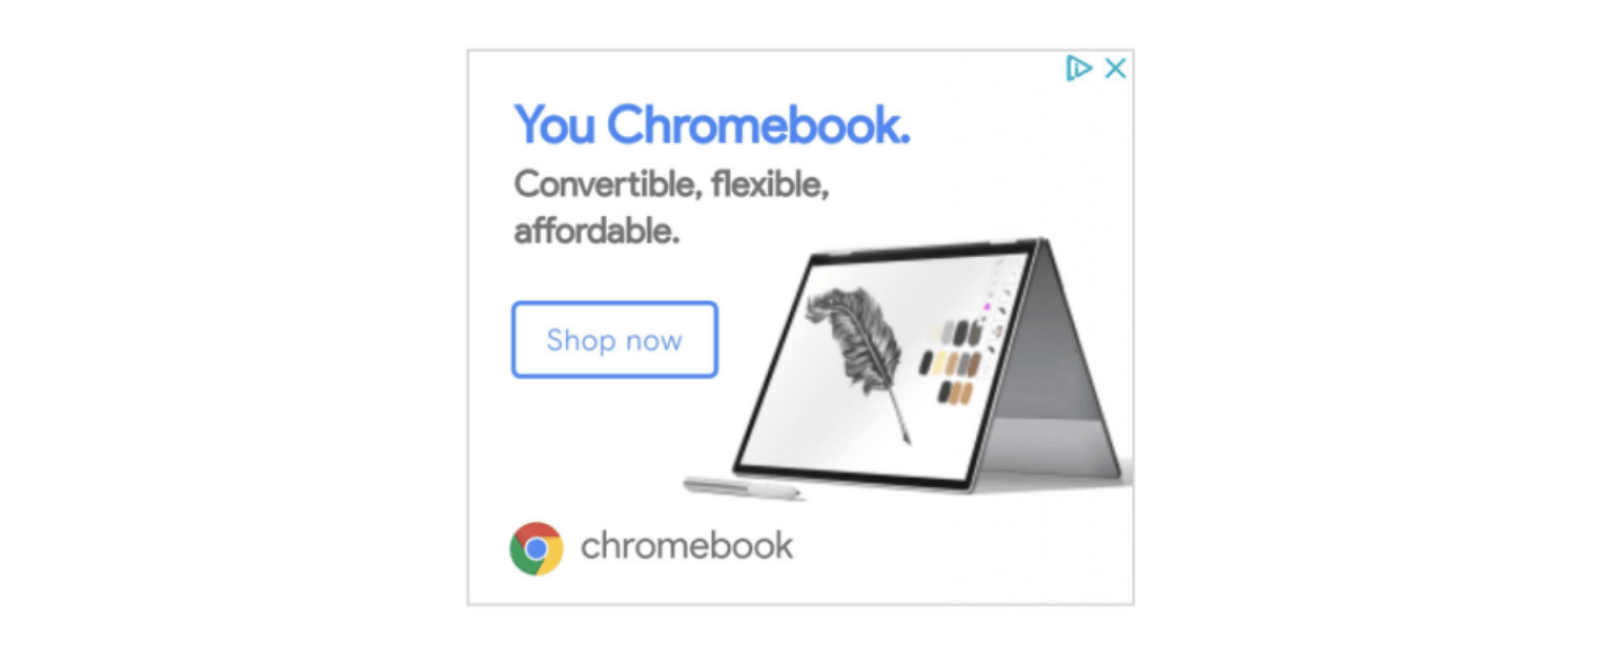 Pixelbook 2 : l'ordinateur de Google dévoilé en avance sur une publicité -  Numerama